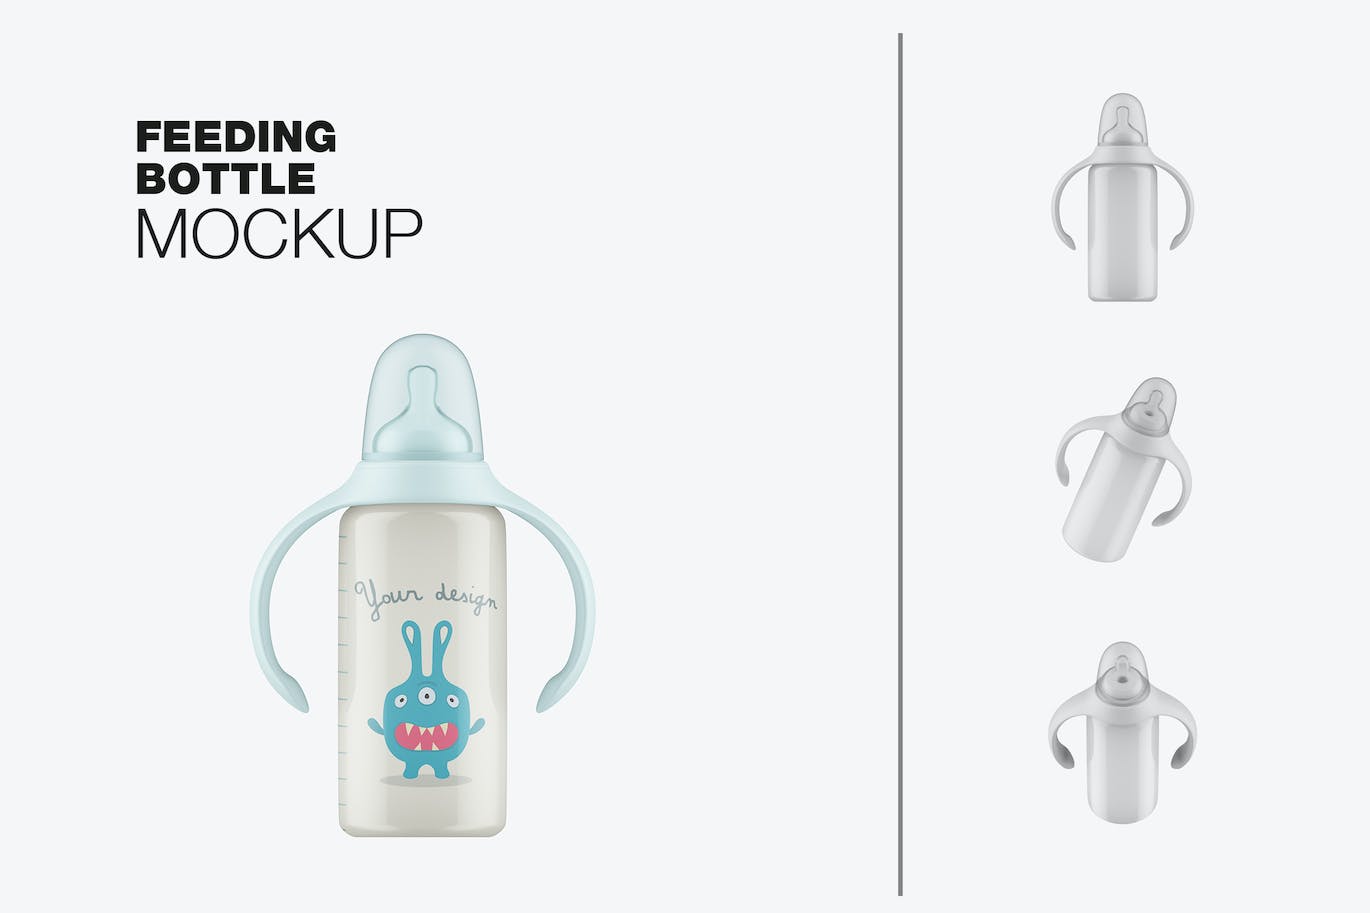 带把手的婴儿奶瓶包装设计样机 Baby Bottle with Handles Mockup 样机素材 第1张